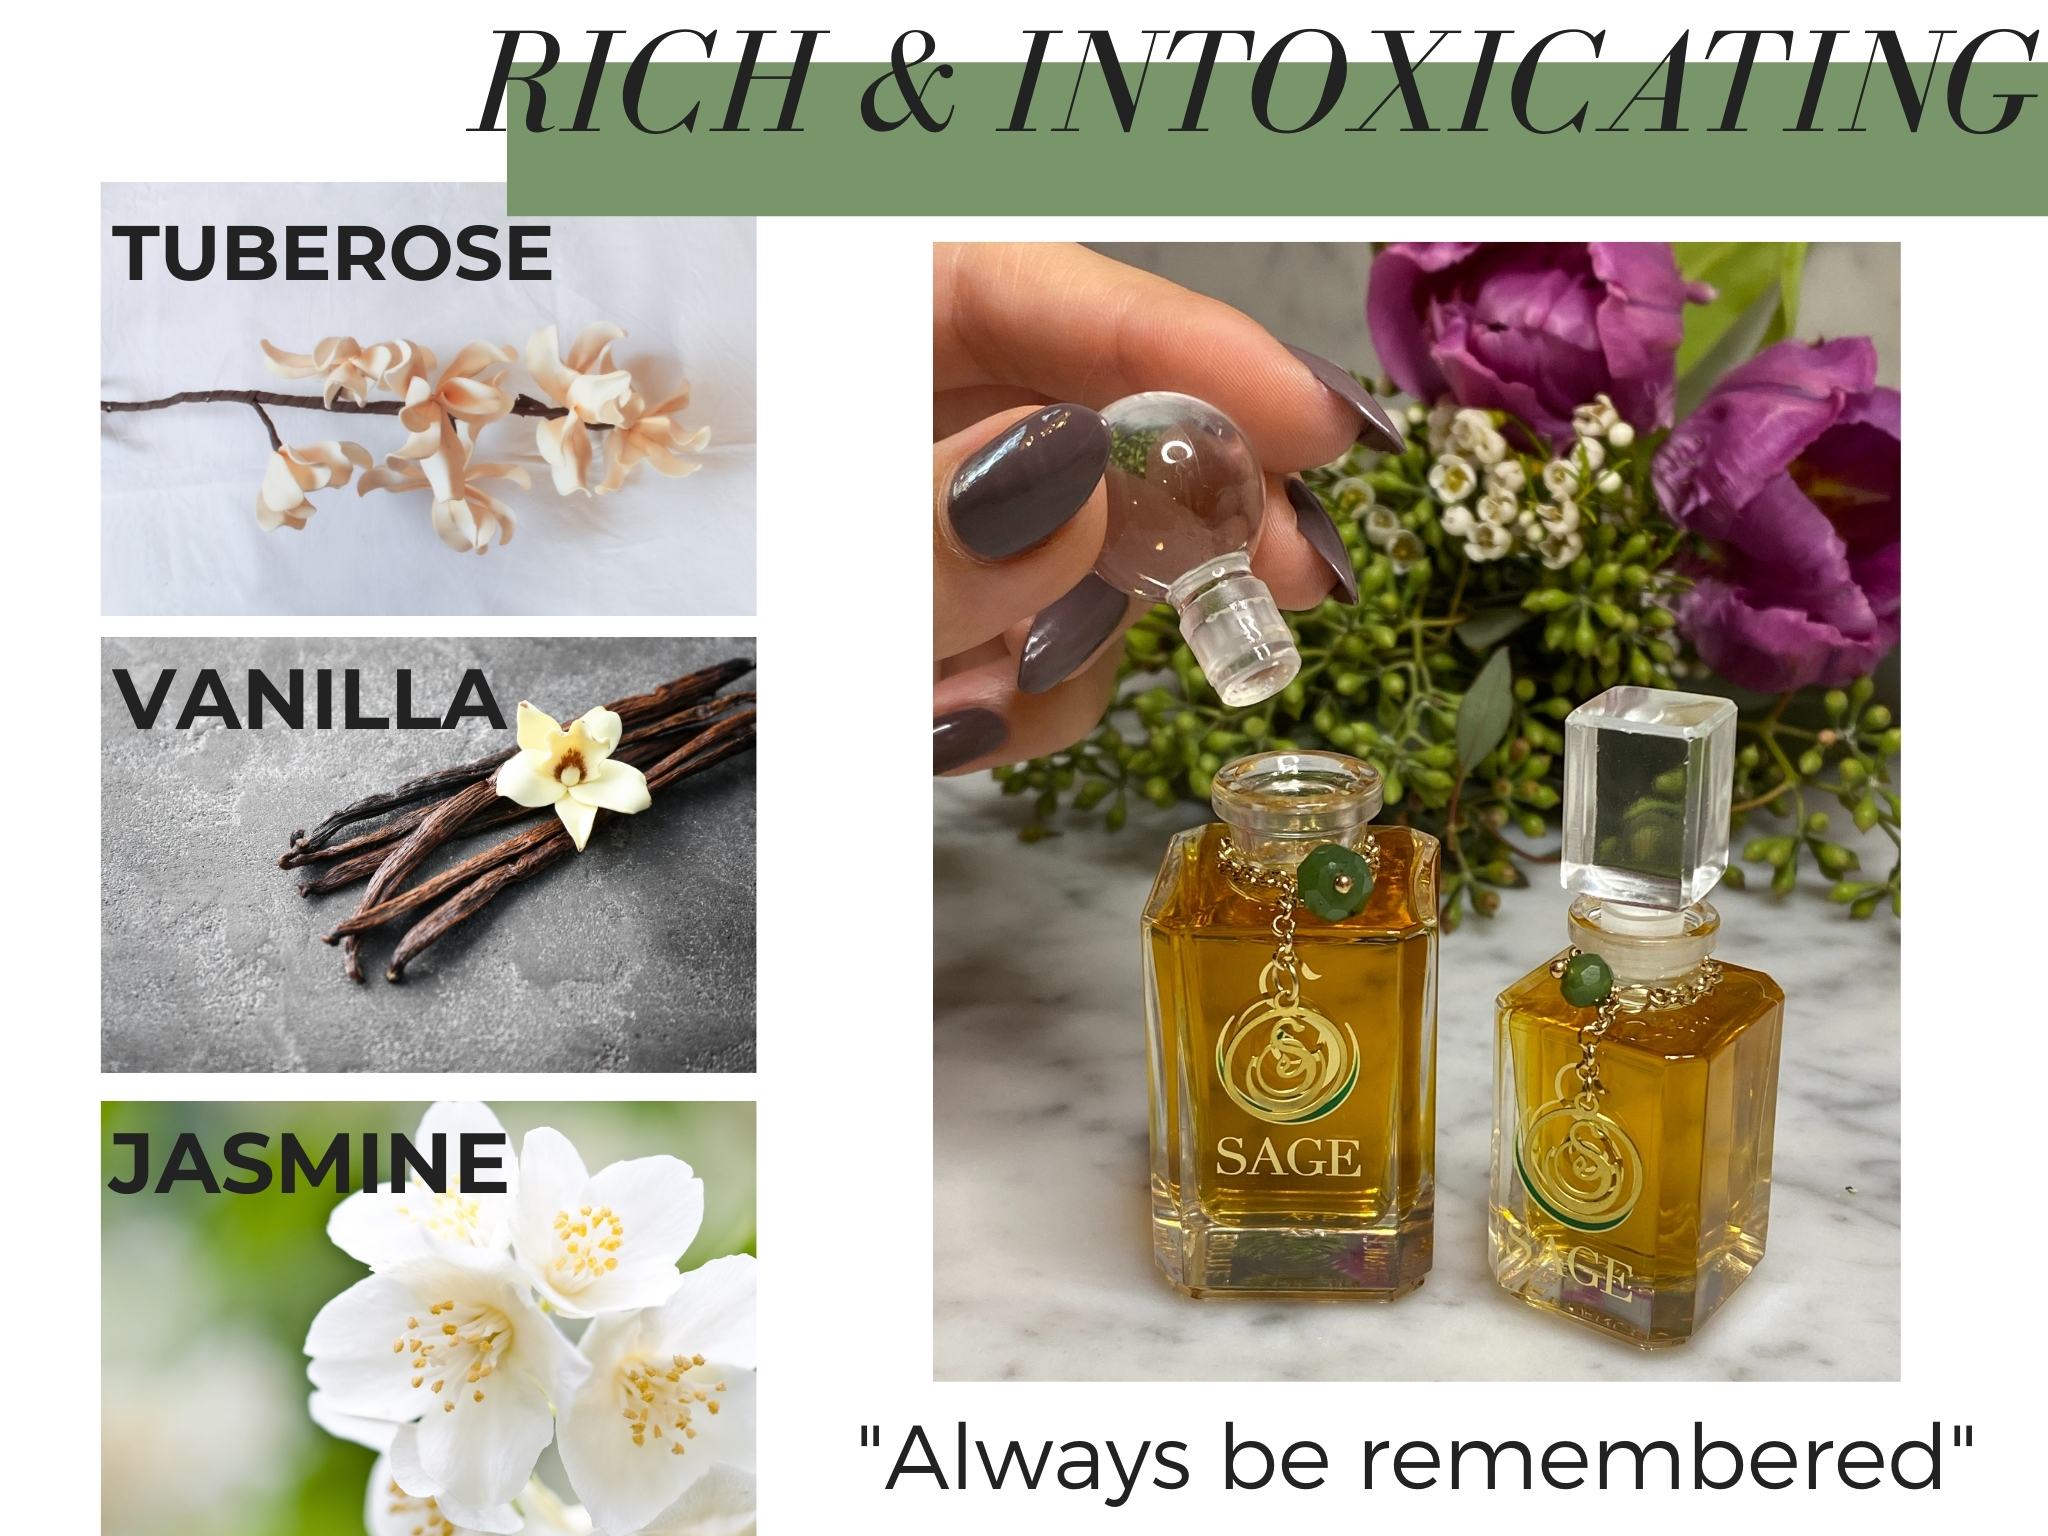 Jade Gemstone Perfume Key Notes Tuberose Vanilla Jasmine